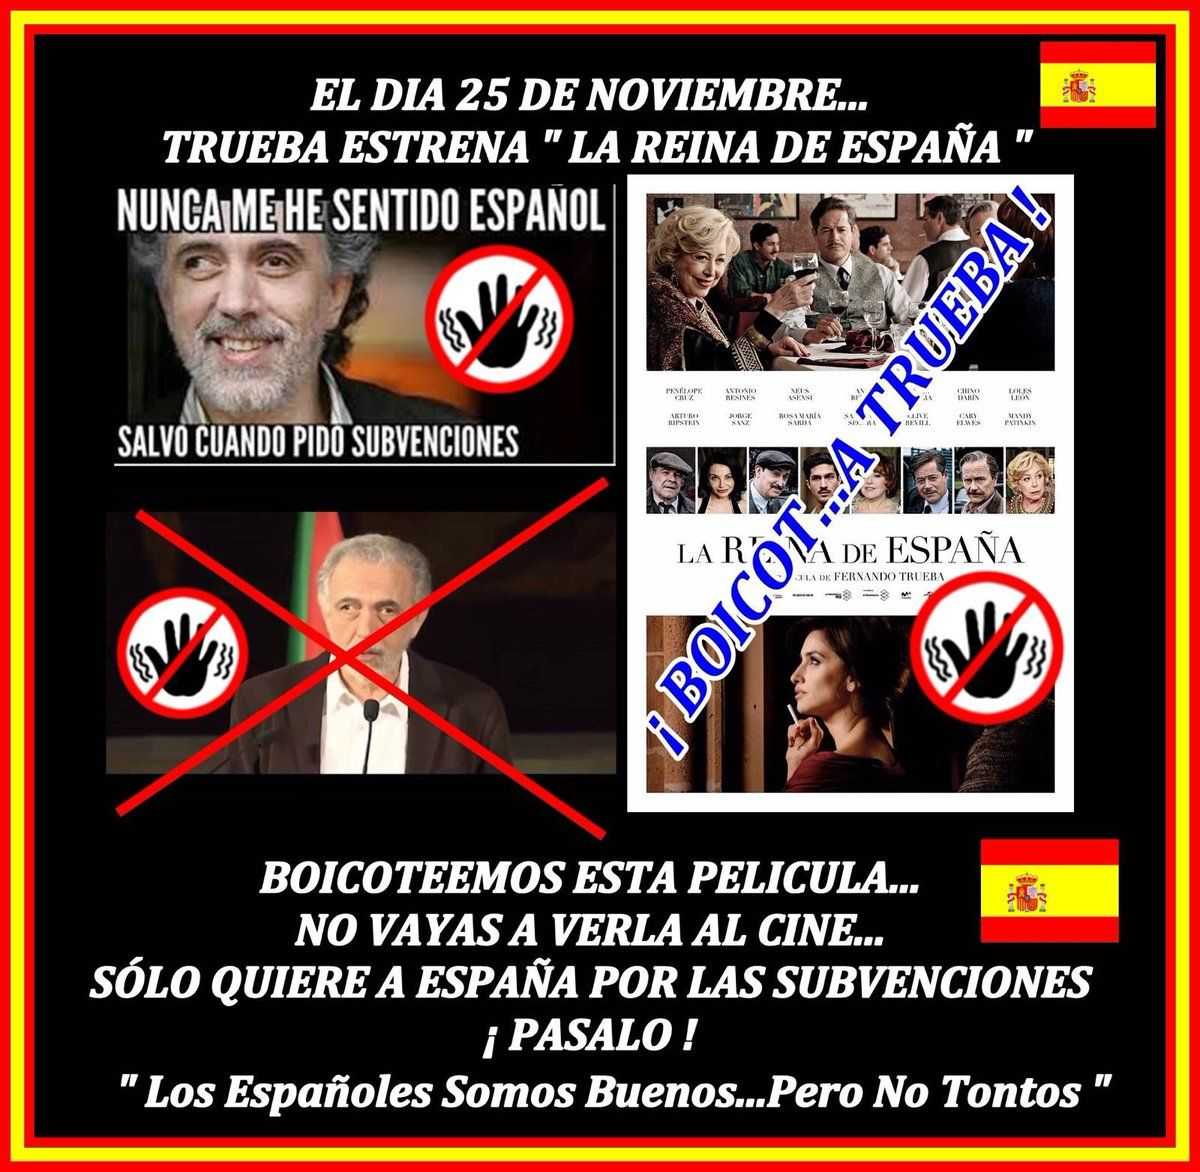 Boicotean 'La reina de España' y acusan a Trueba de "antiespañol"